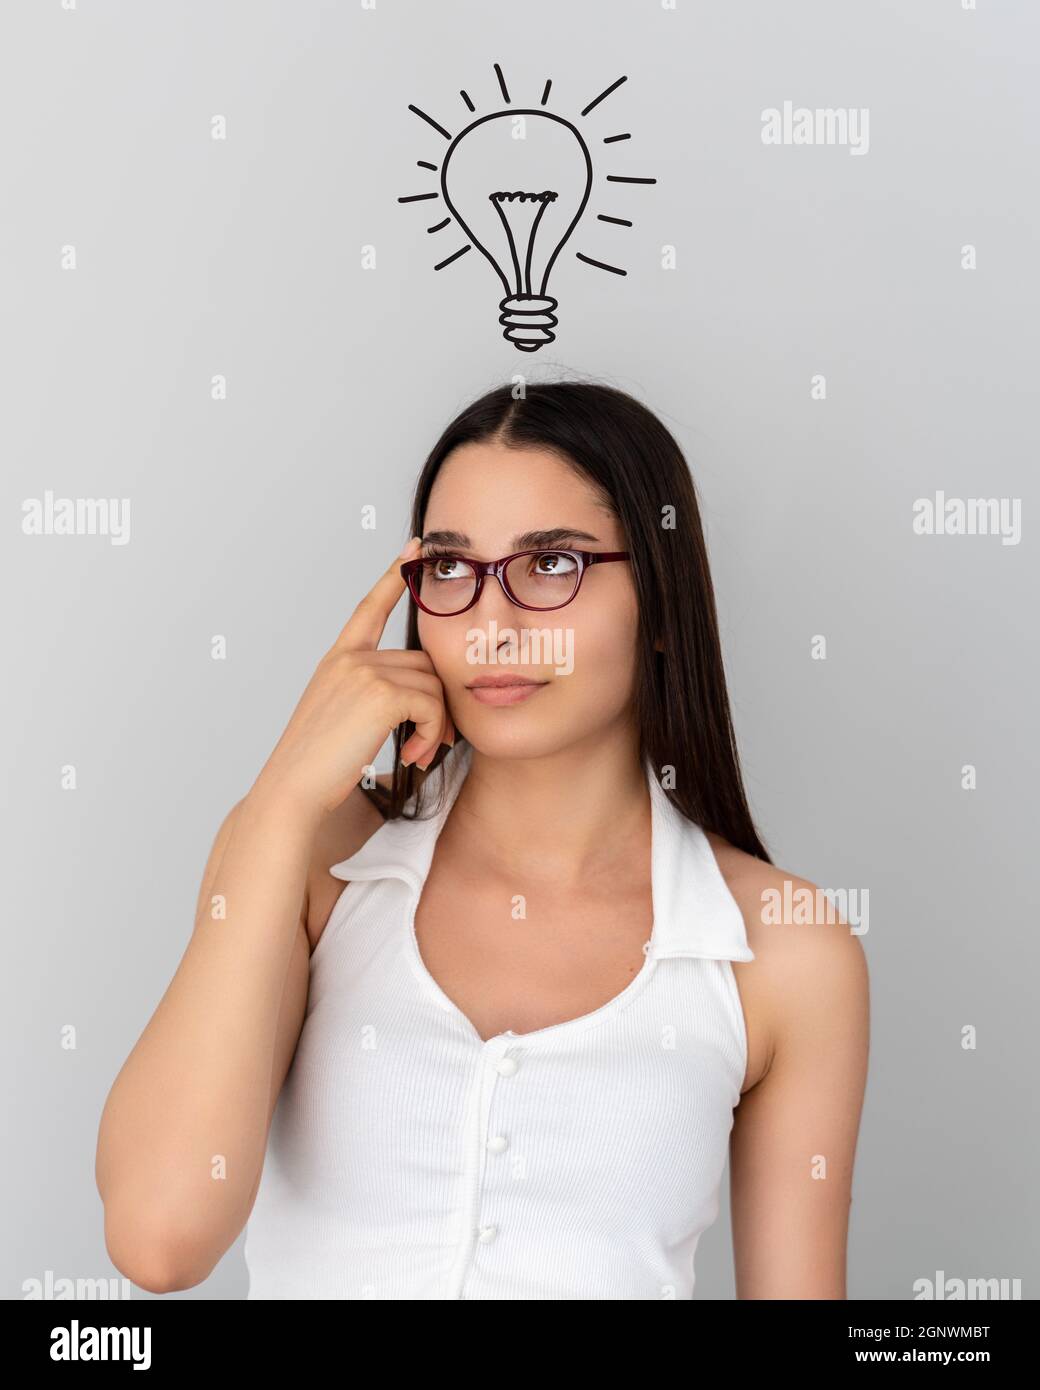 Junge denkende Frau mit abstrakter Glühbirne Zeichnung auf dem Kopf. Idee, Lösung, gehärtet Konzept. Hochwertige Fotos Stockfoto